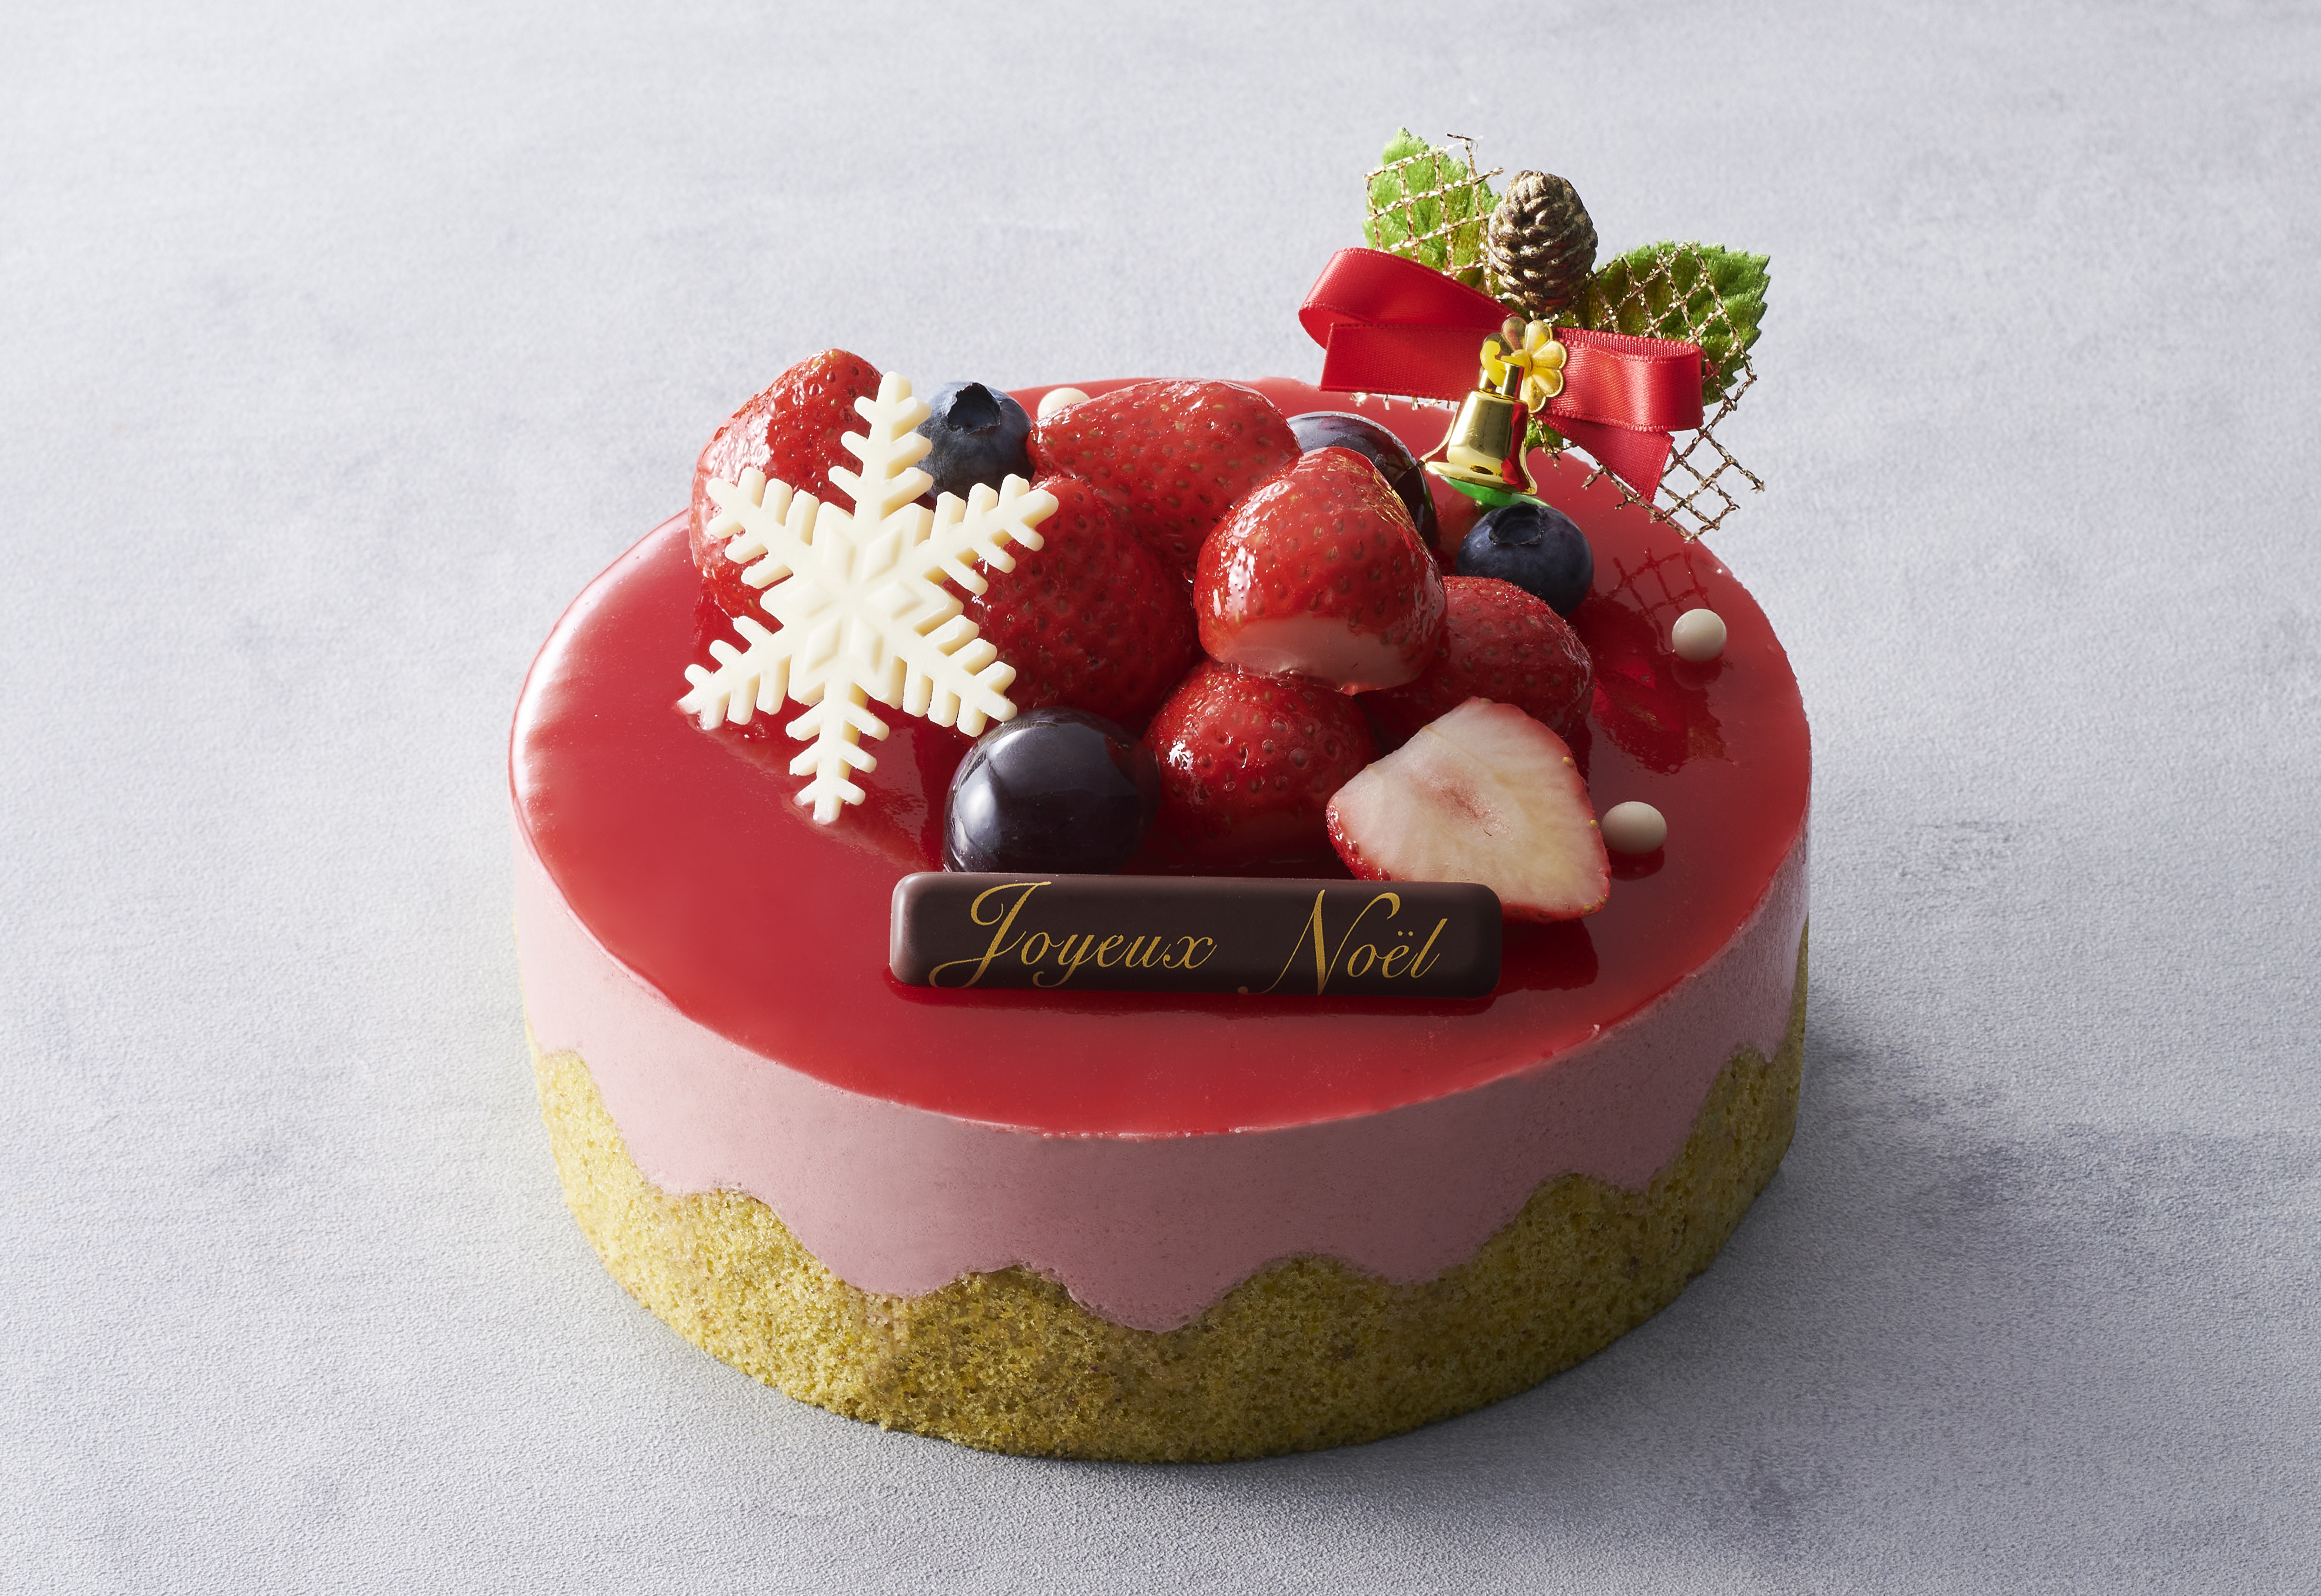 ベルギー王室御用達チョコレートブランド「ヴィタメール」がお届けする2021年クリスマスケーキコレクション10月中旬よりご予約受付開始のサブ画像6